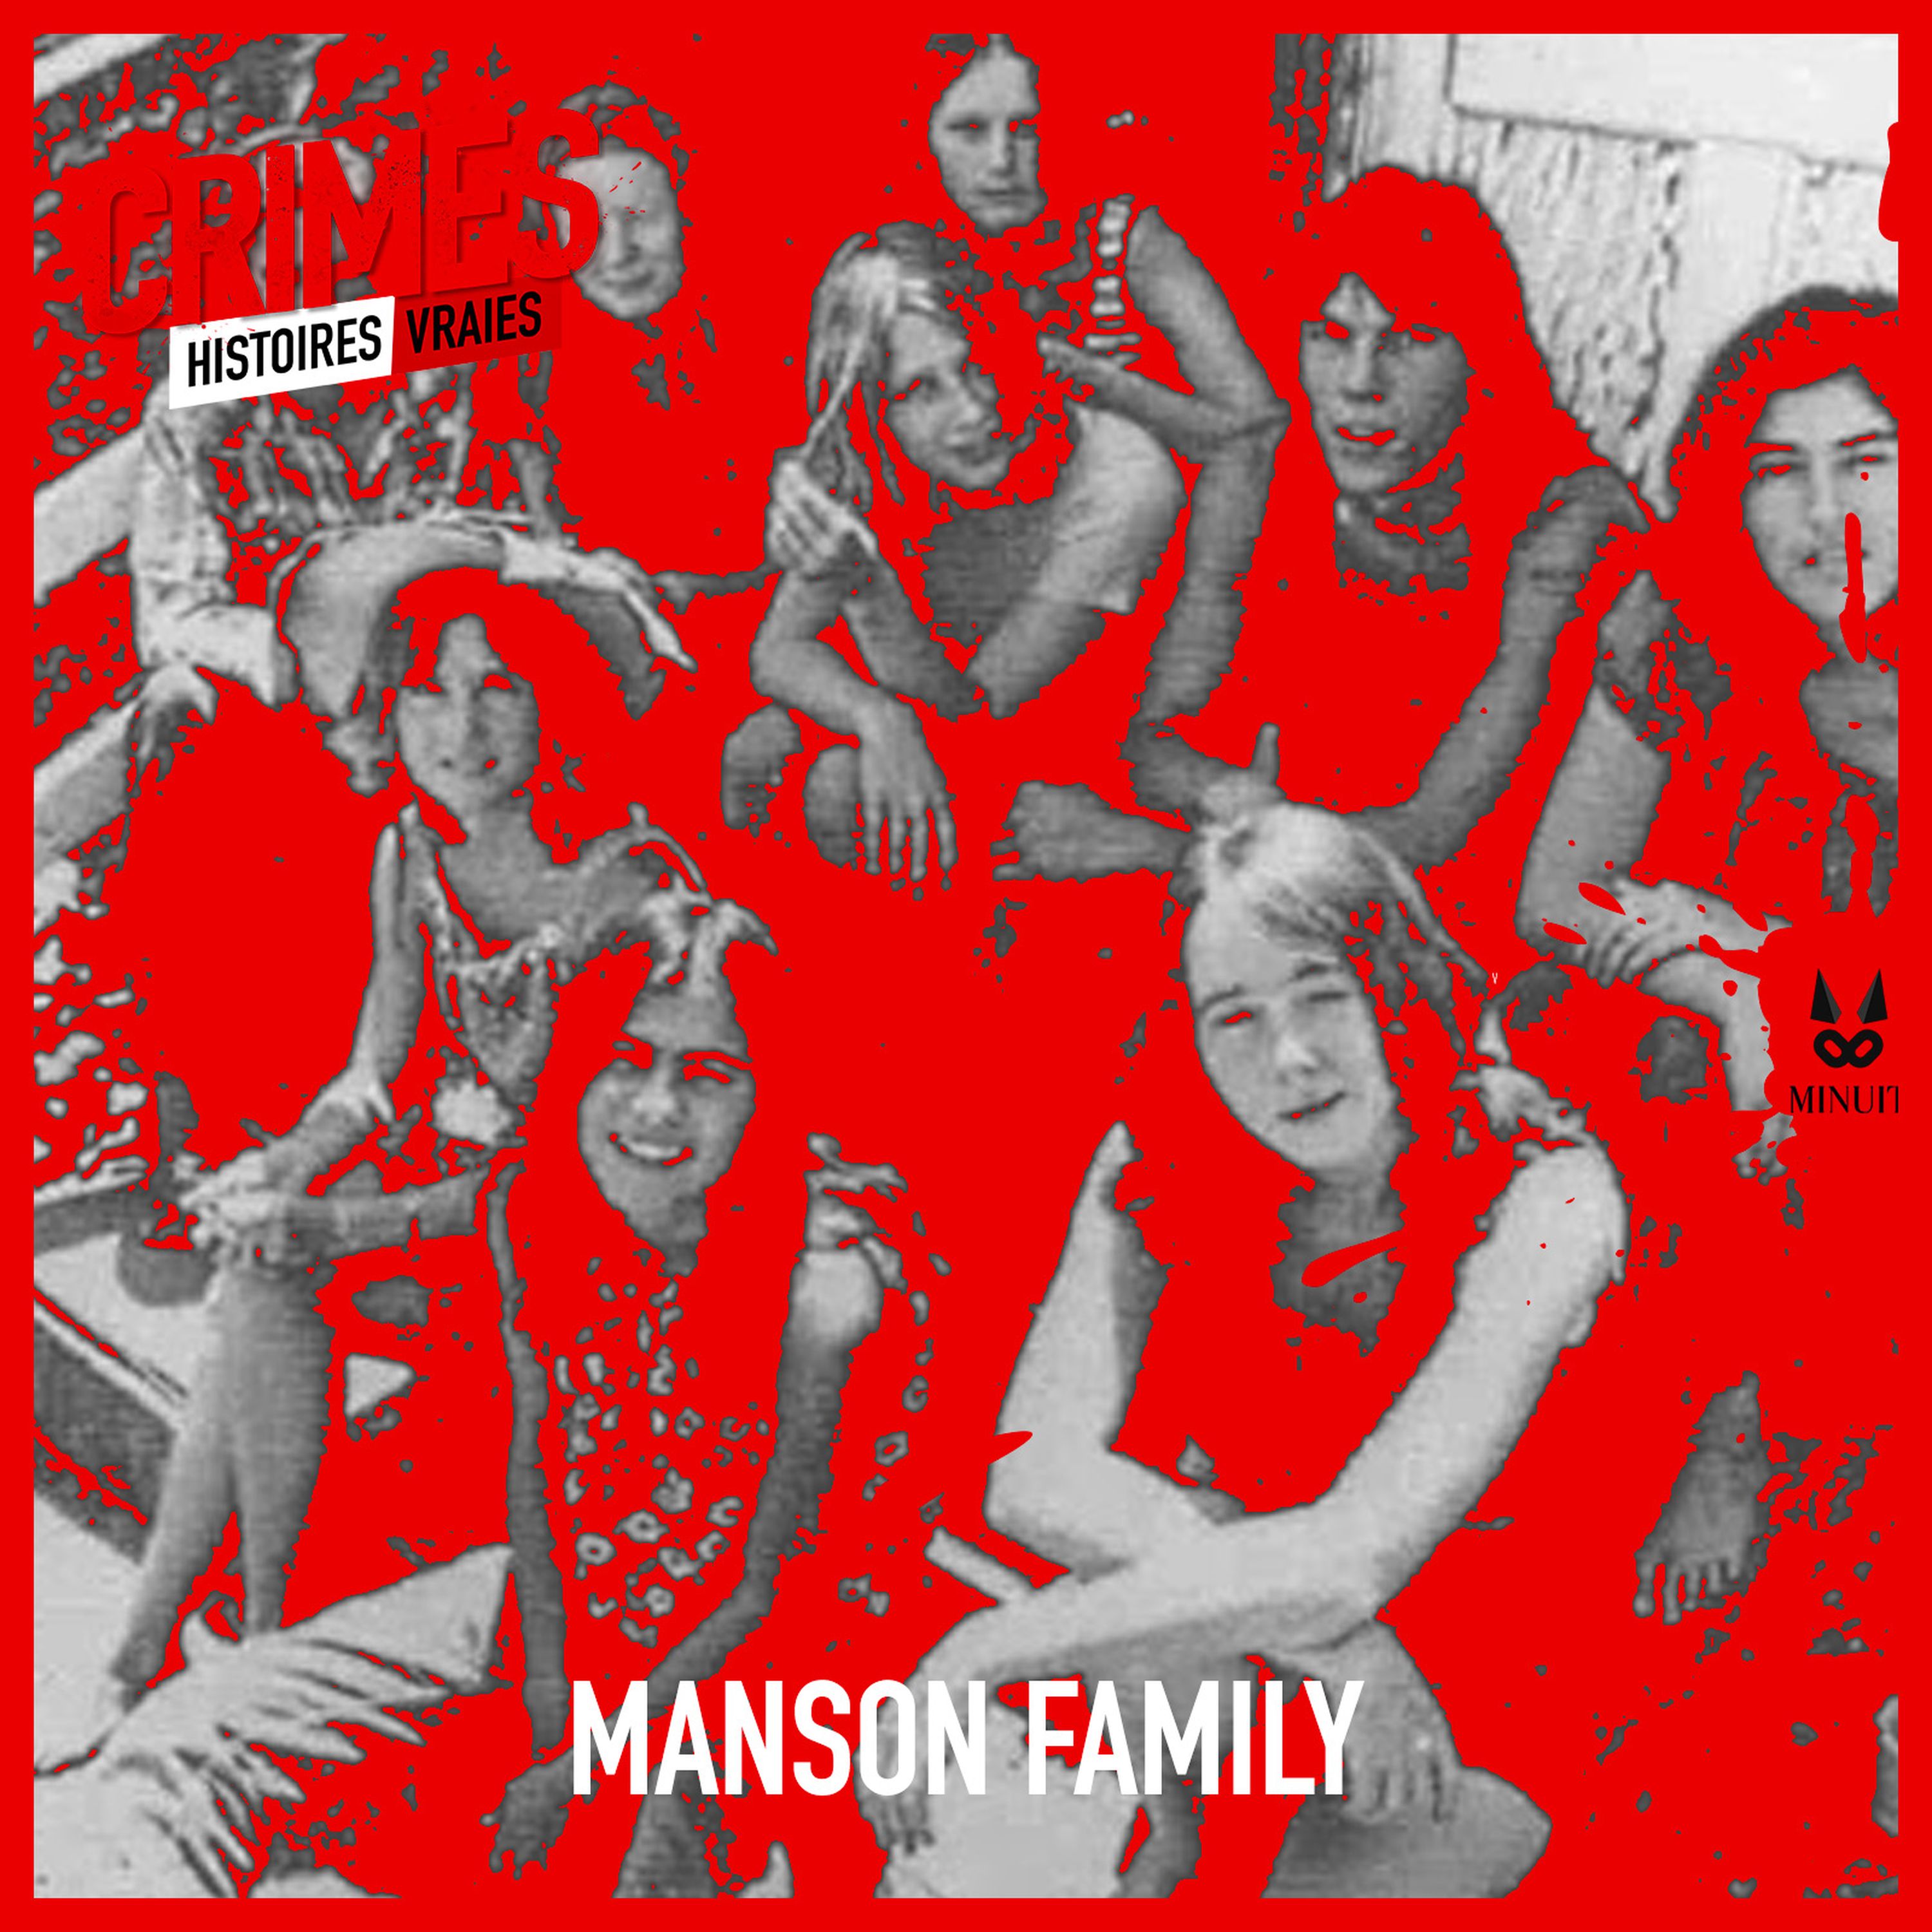 Charles Manson et la Manson Family • Episode 6 sur 6